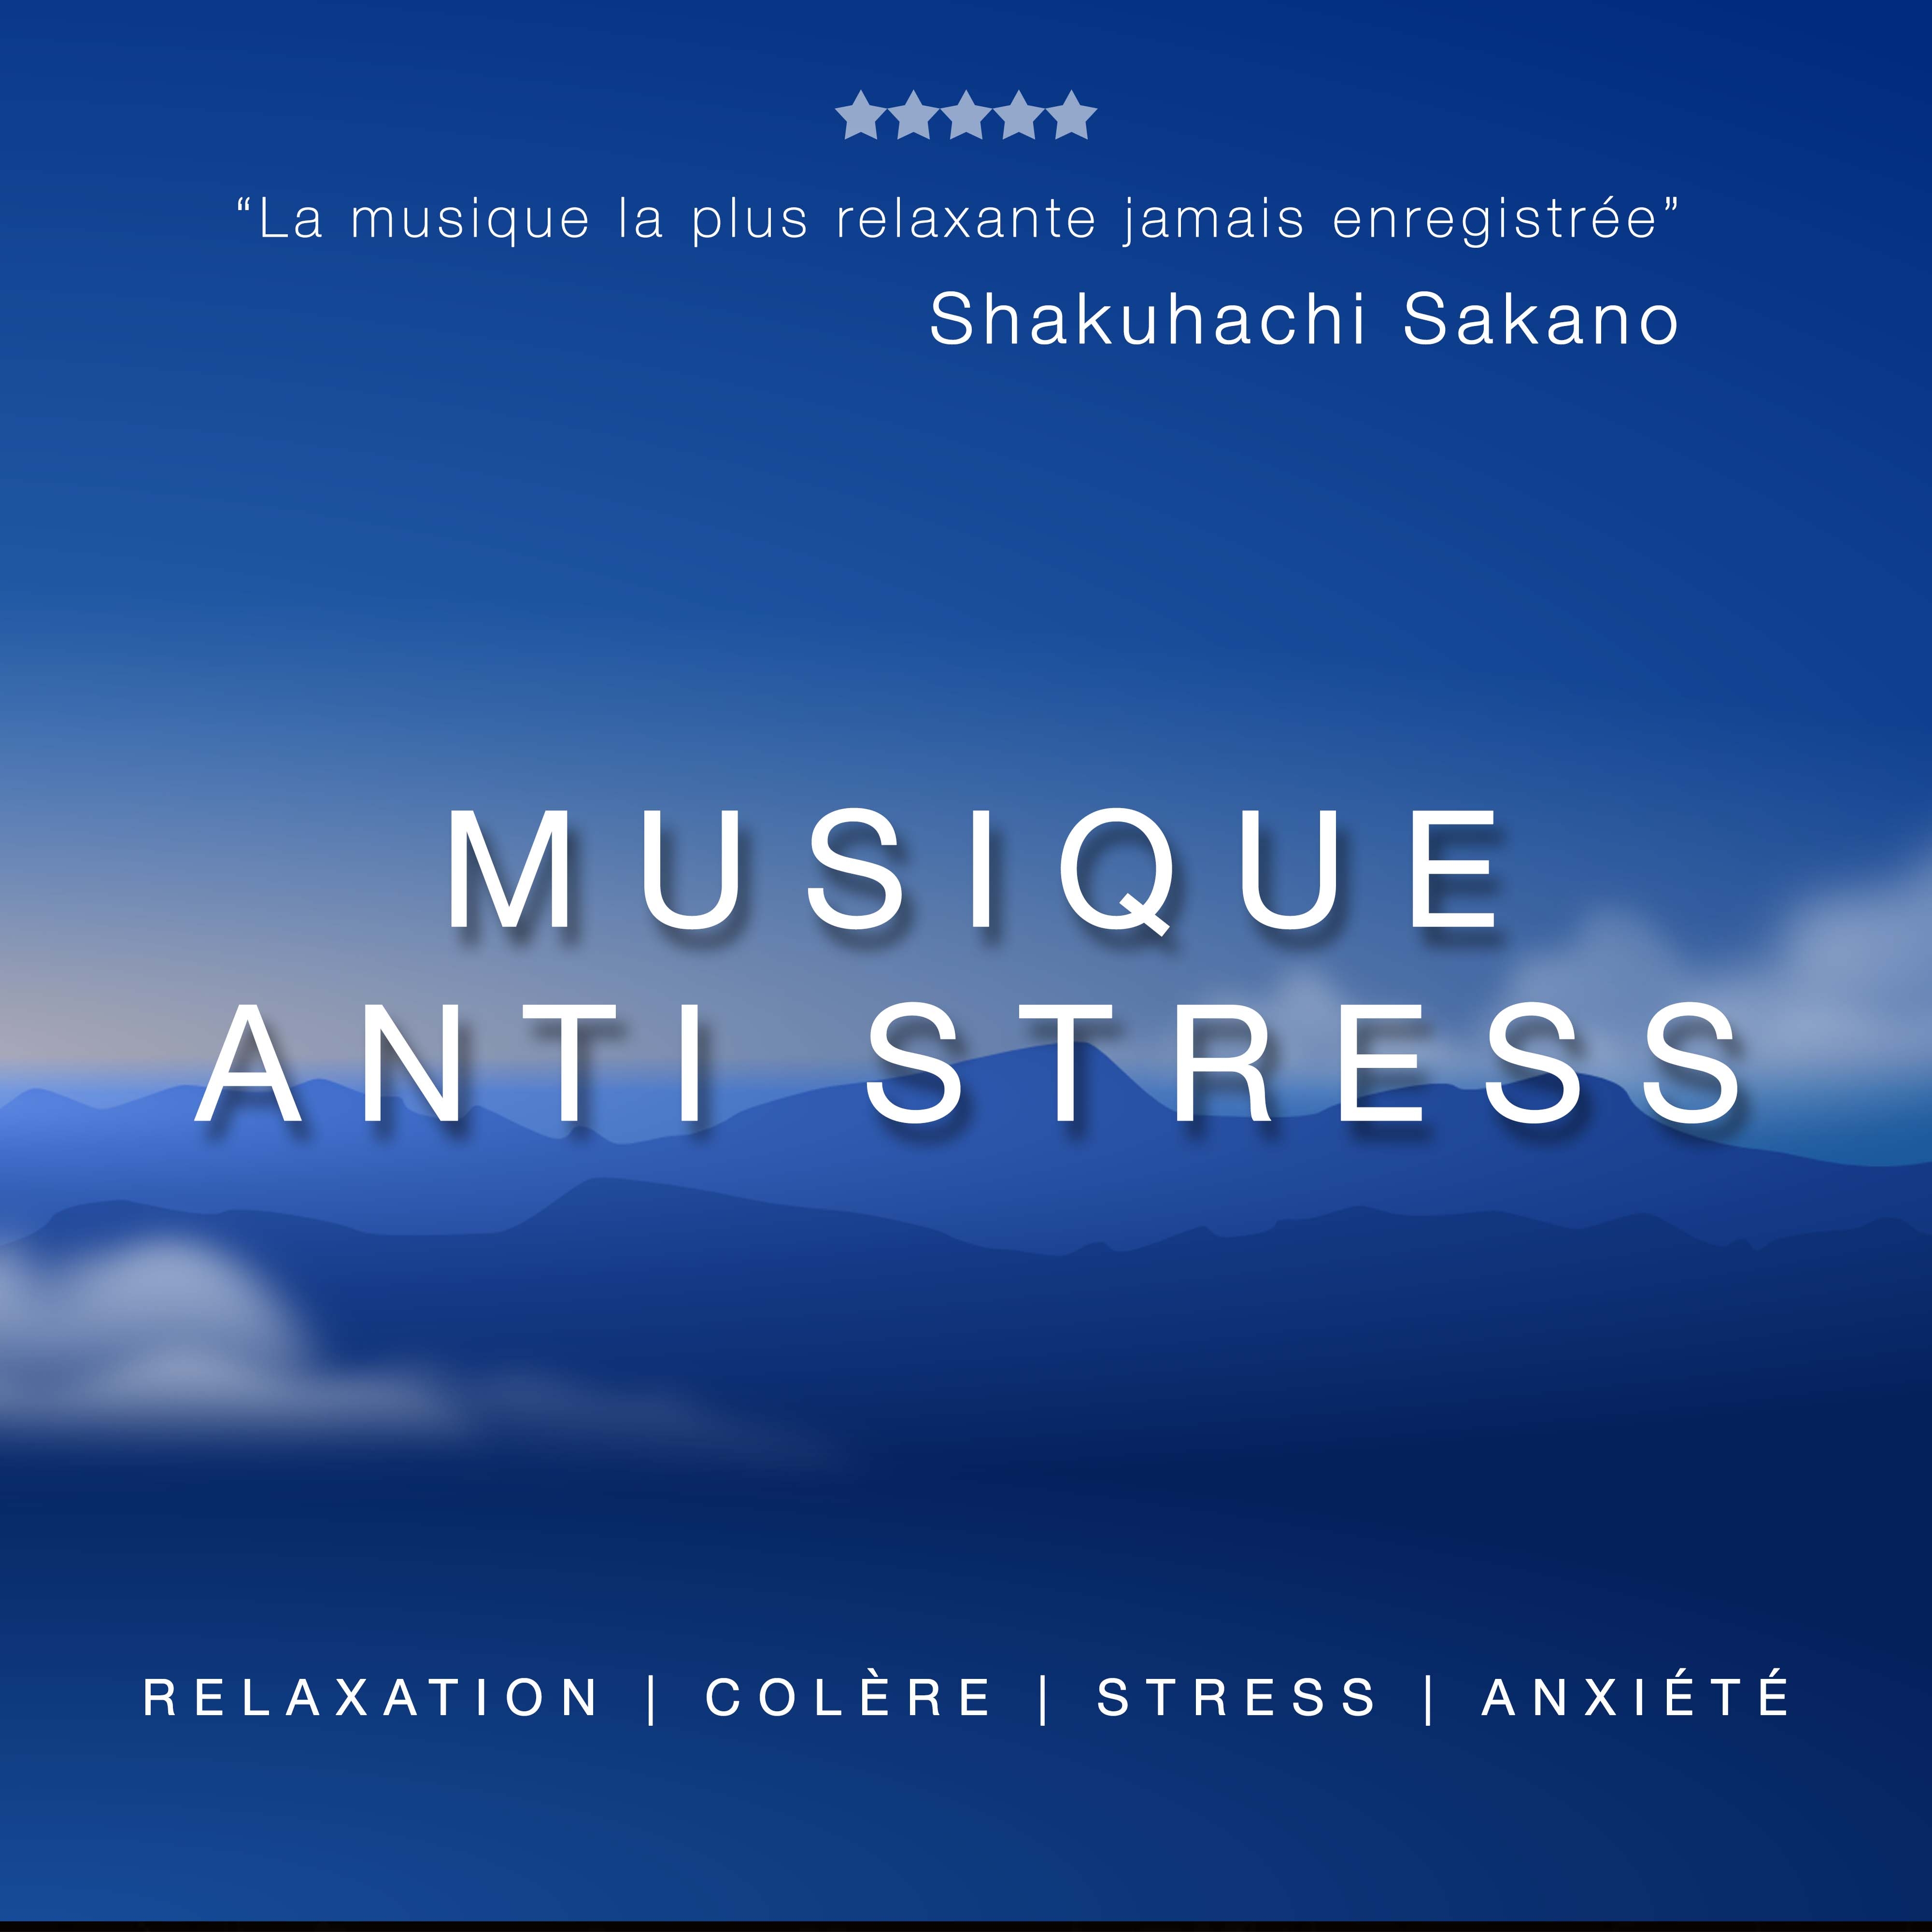 Musique Anti Stress: Musique de Relaxation, Musique Douce pour la Cole re, le Stress et l' Anxie te